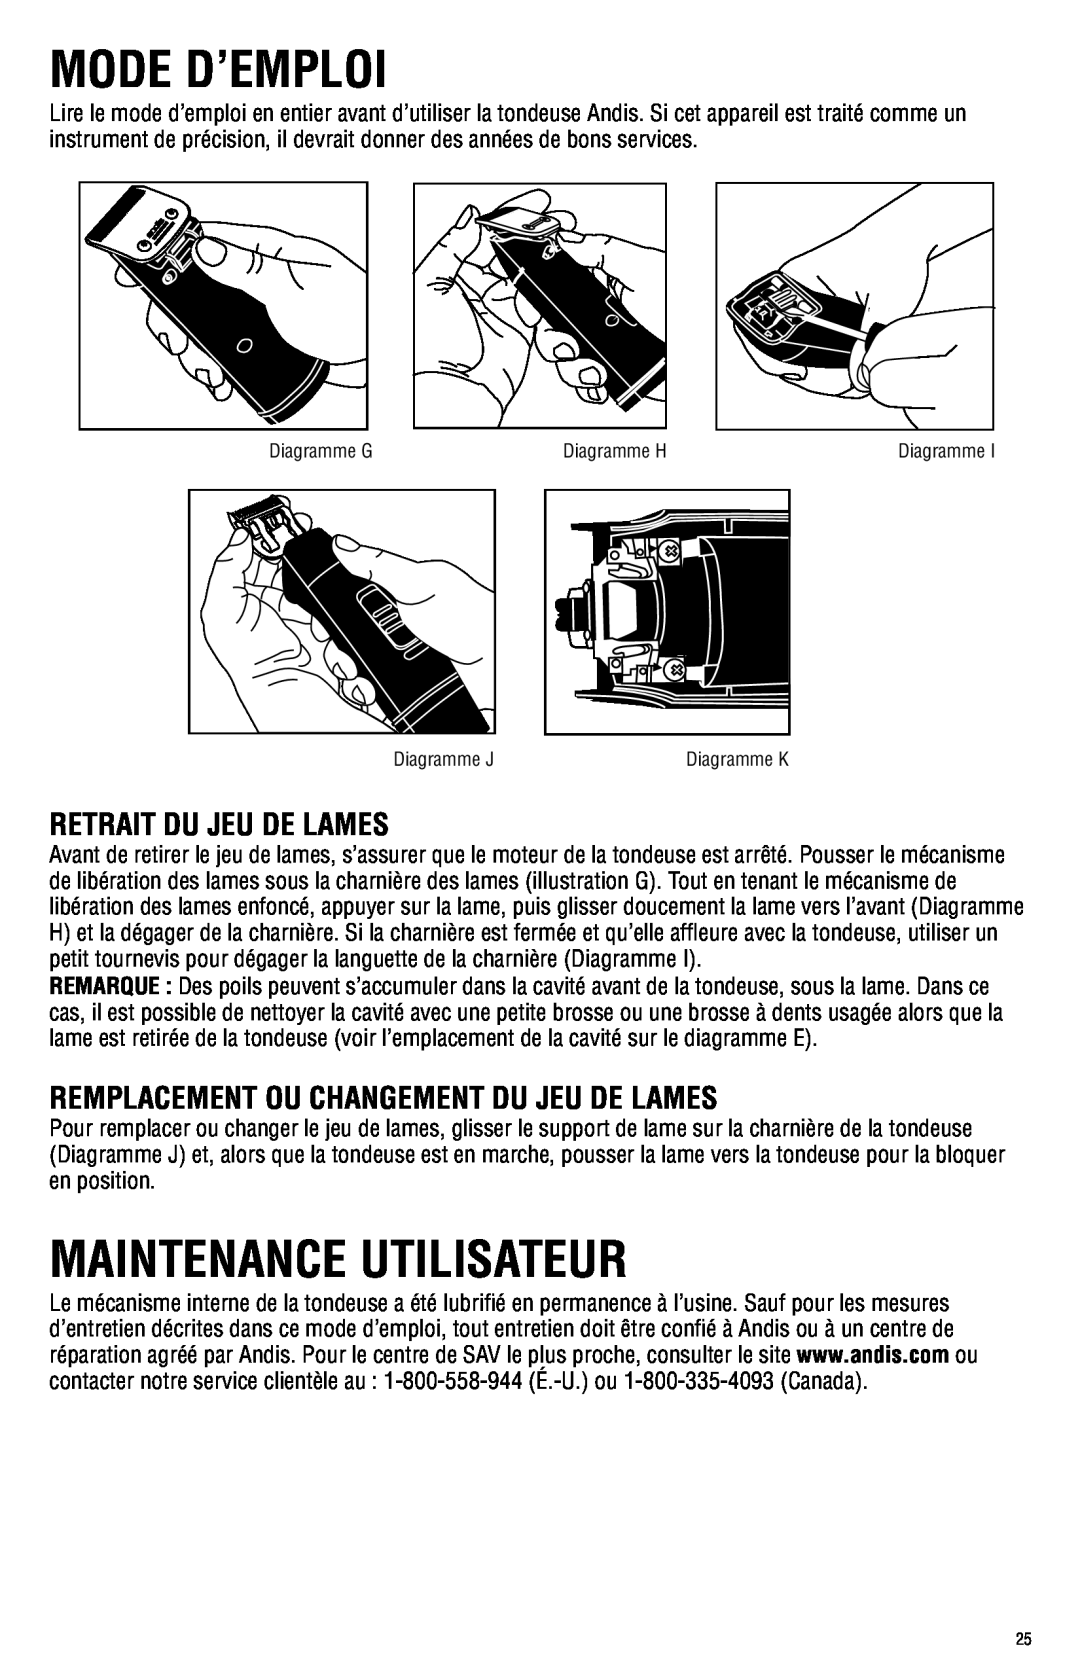 Andis Company AGRC manual Mode D’Emploi, Maintenance Utilisateur, Retrait Du Jeu De Lames 